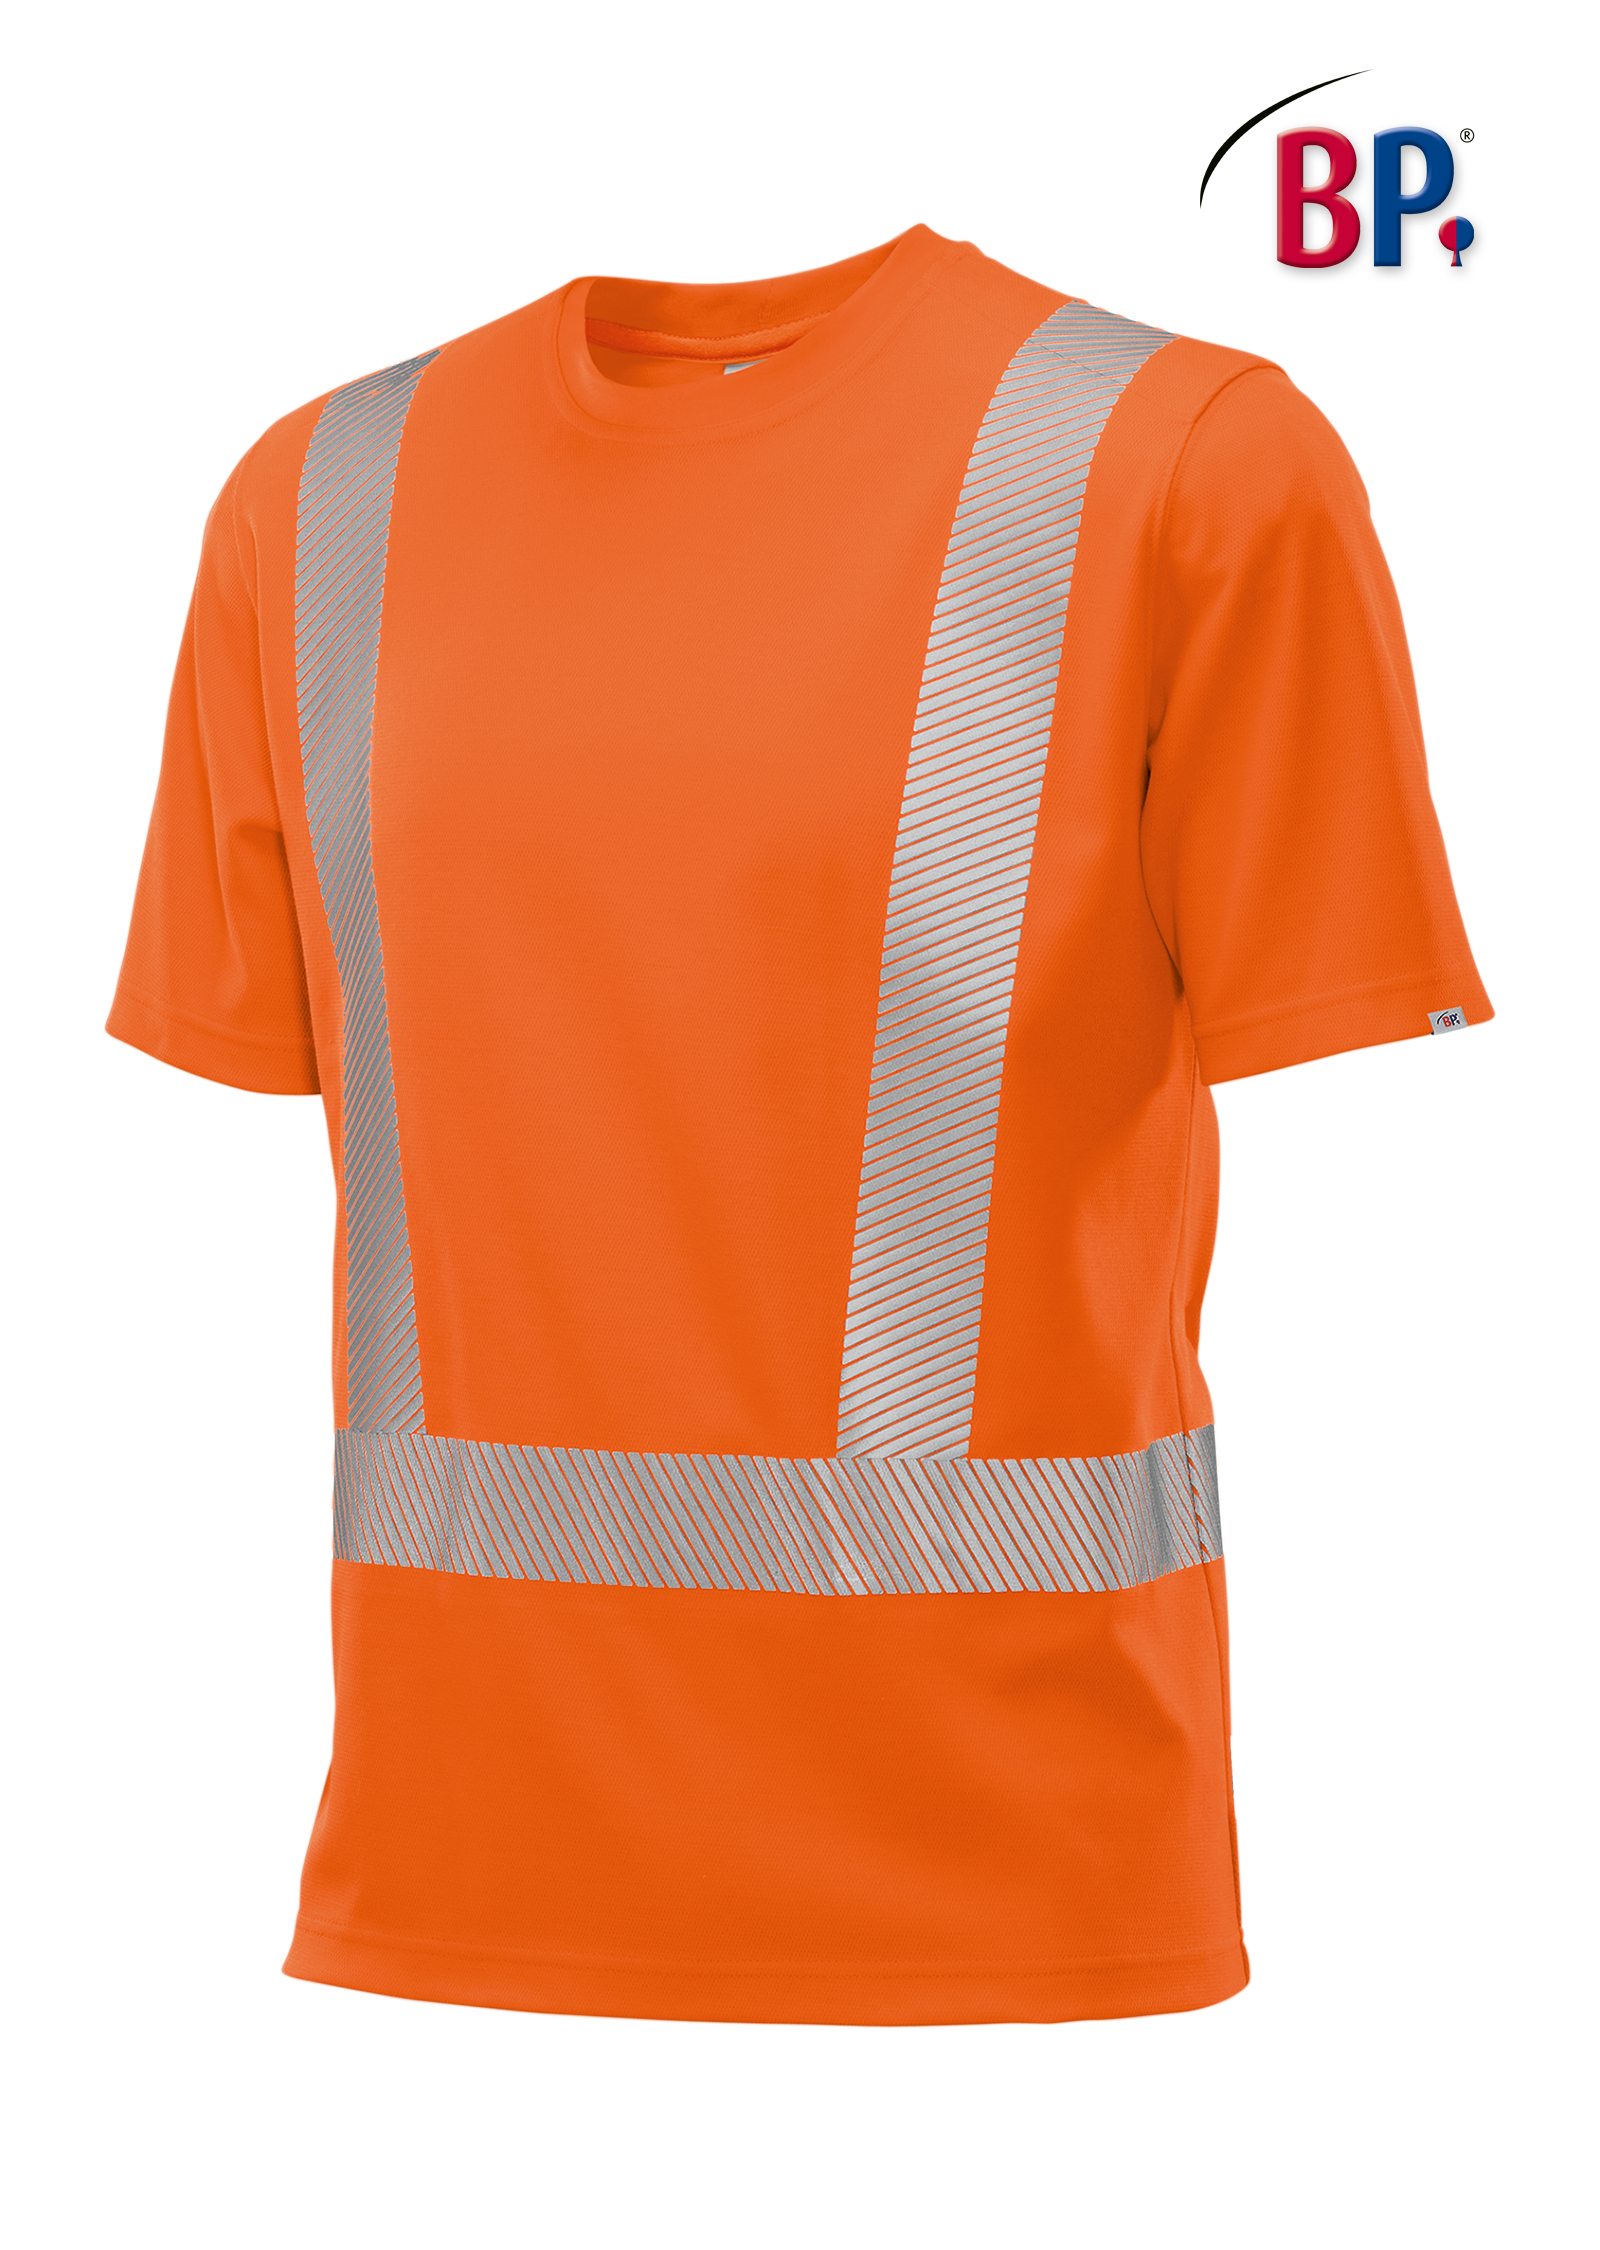 BP® Warnschutz-T-Shirt